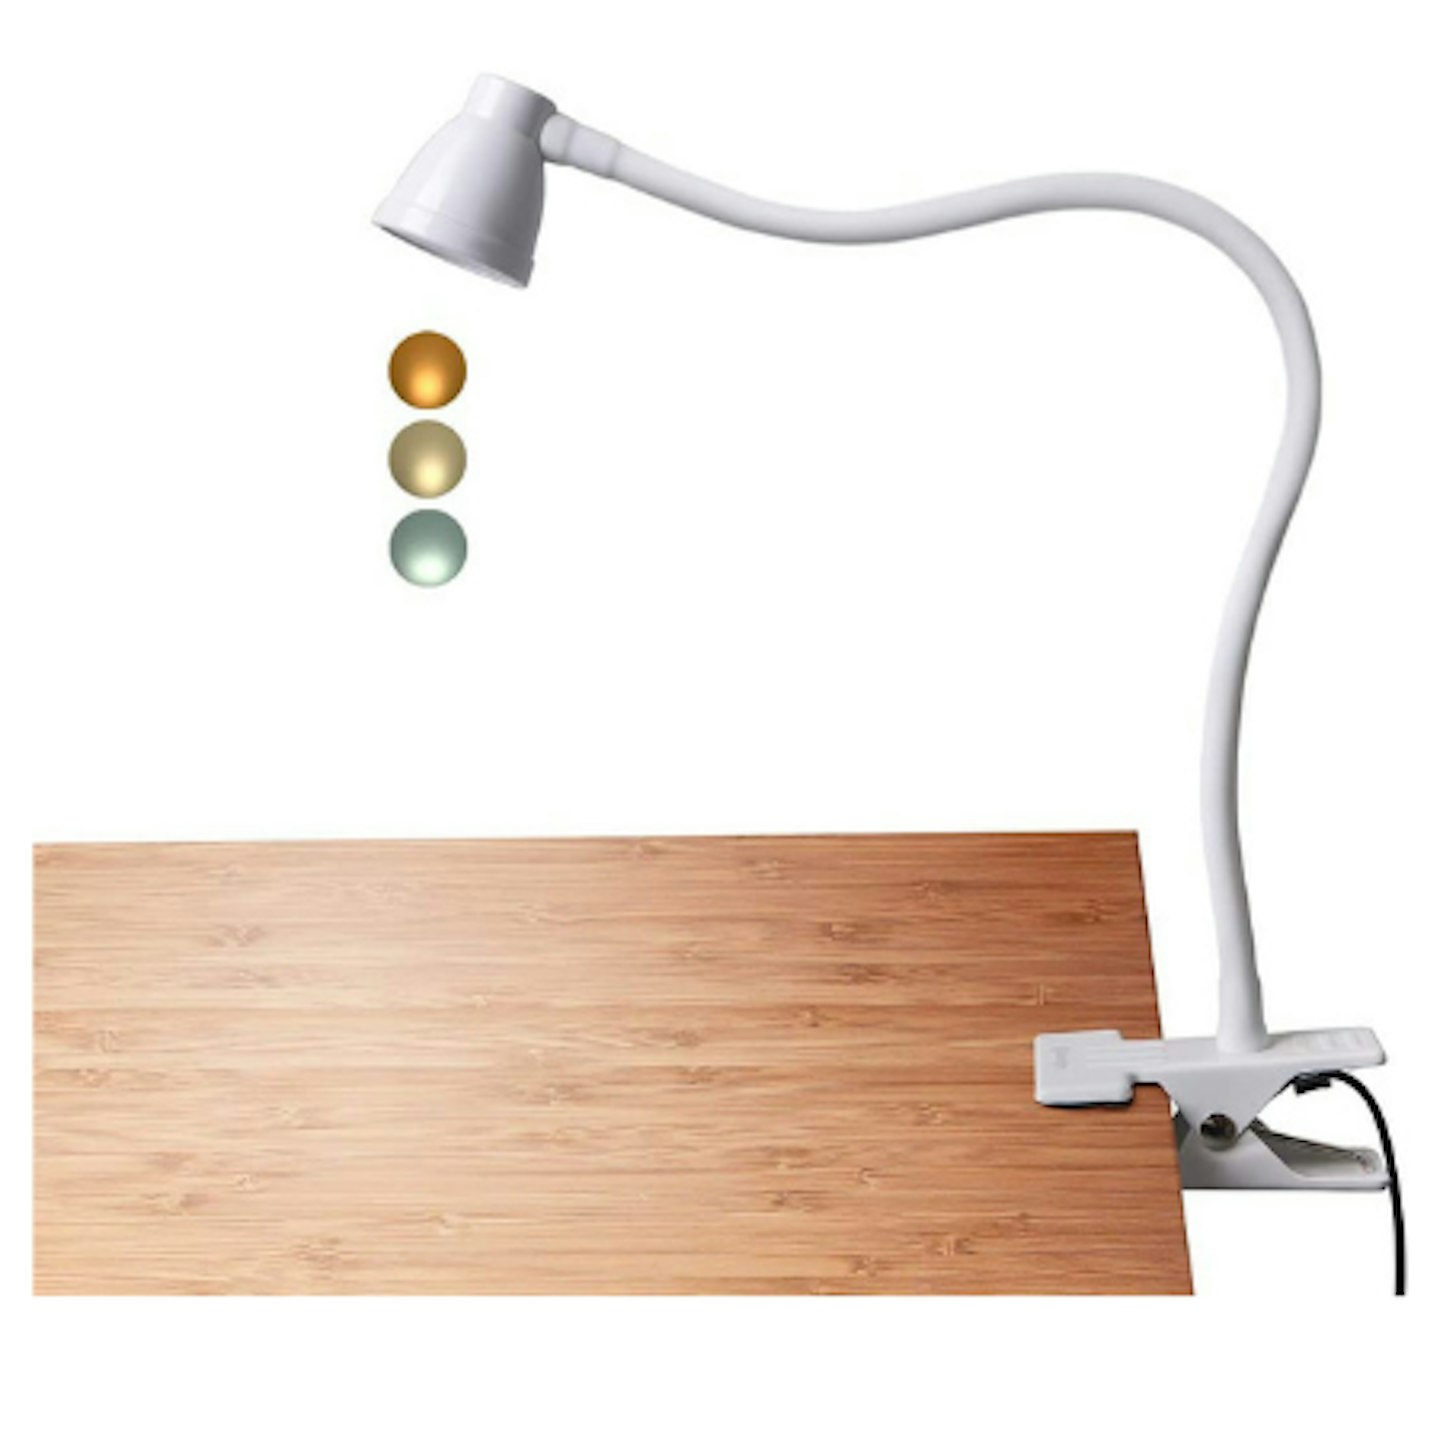 CeSunlight Clamp Desk Lamp